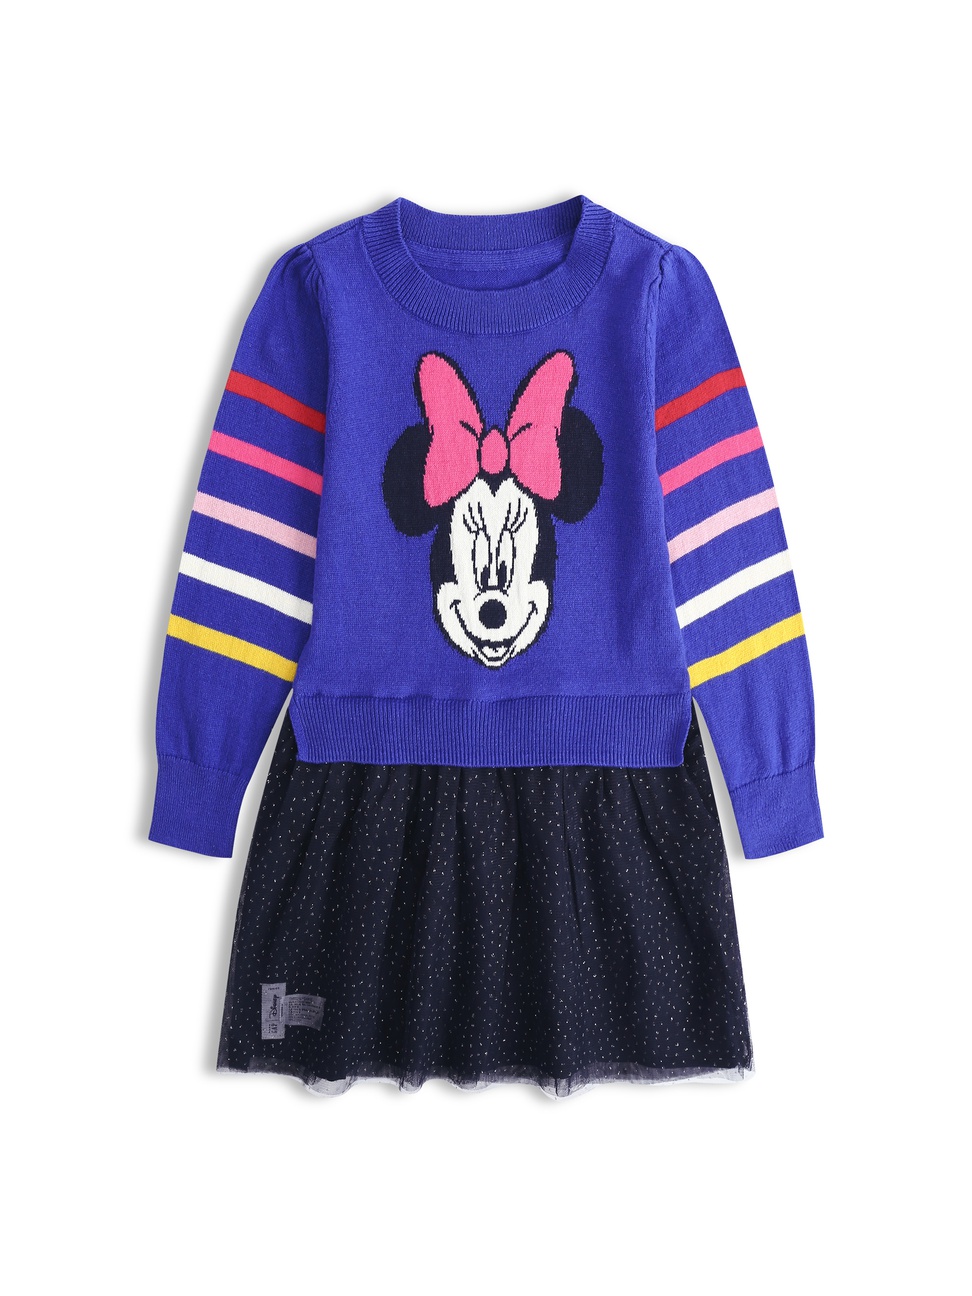 女幼童裝|Gap x Disney迪士尼聯名 米妮印花圓領毛衣裙-米妮老鼠圖案